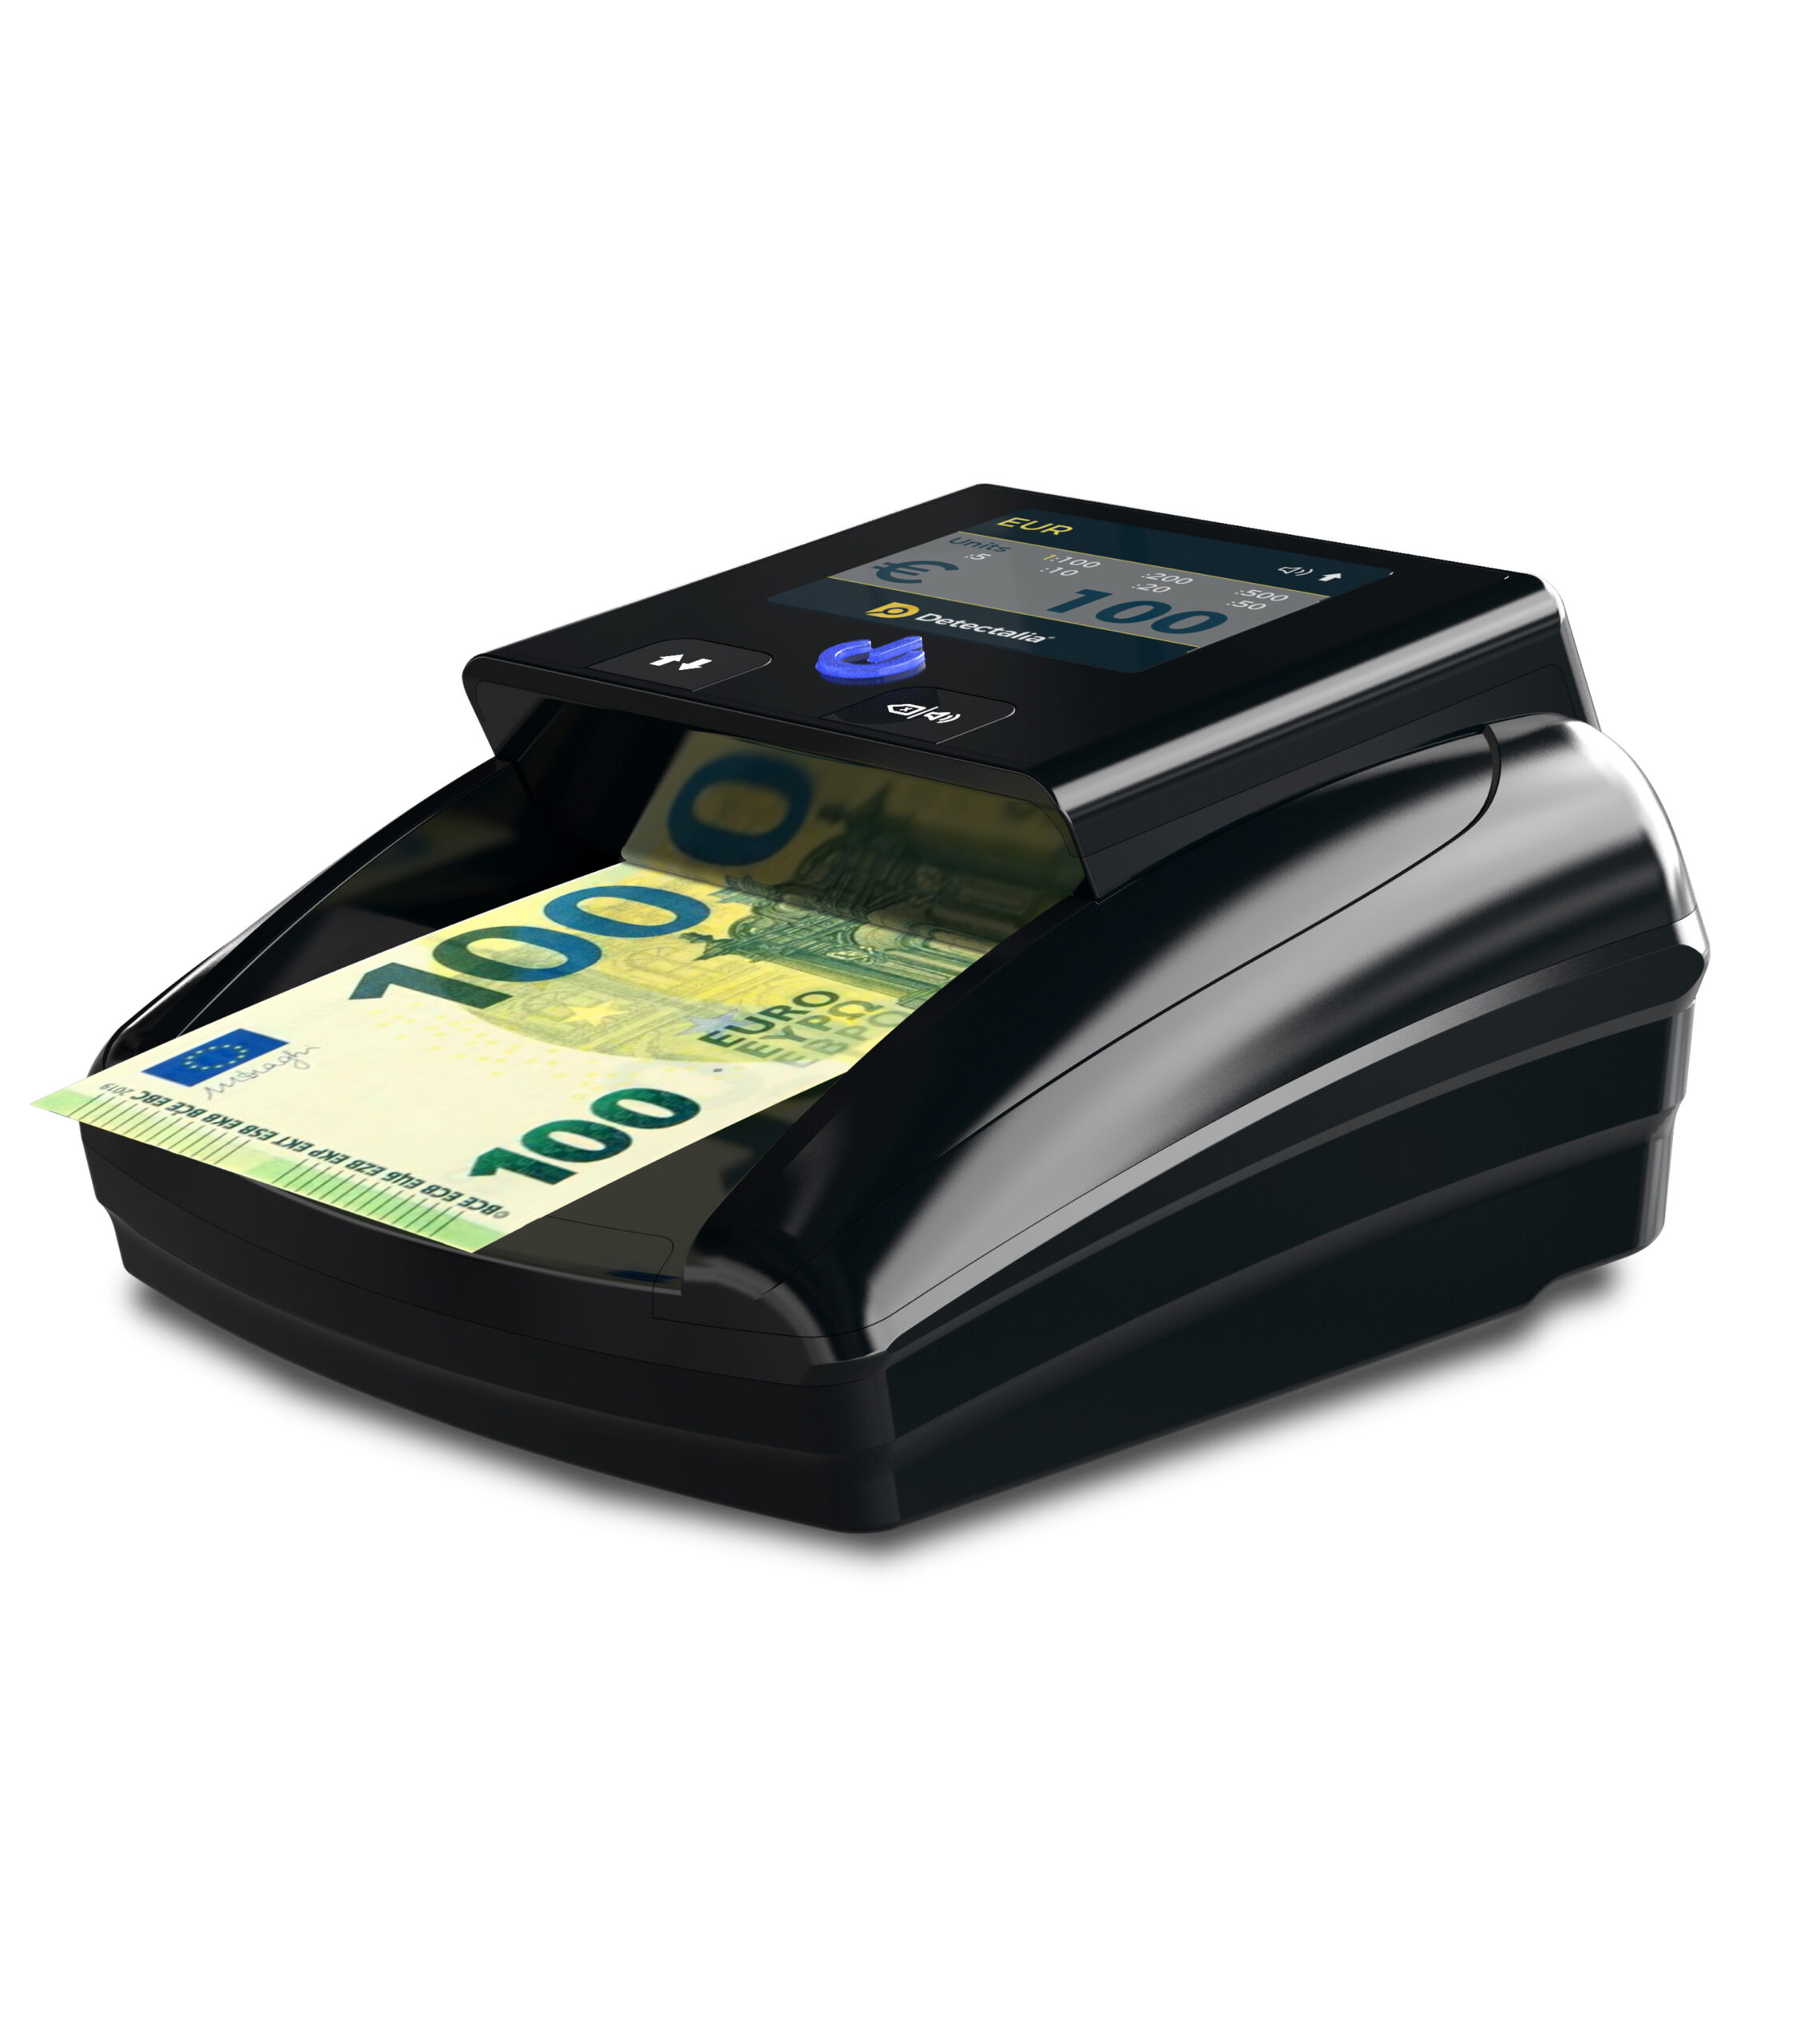 Rileva banconote false controlli UV - WL - MG - MT senza display - Conta e Controlla  Banconote - Gestione Denaro - Linee Professionali